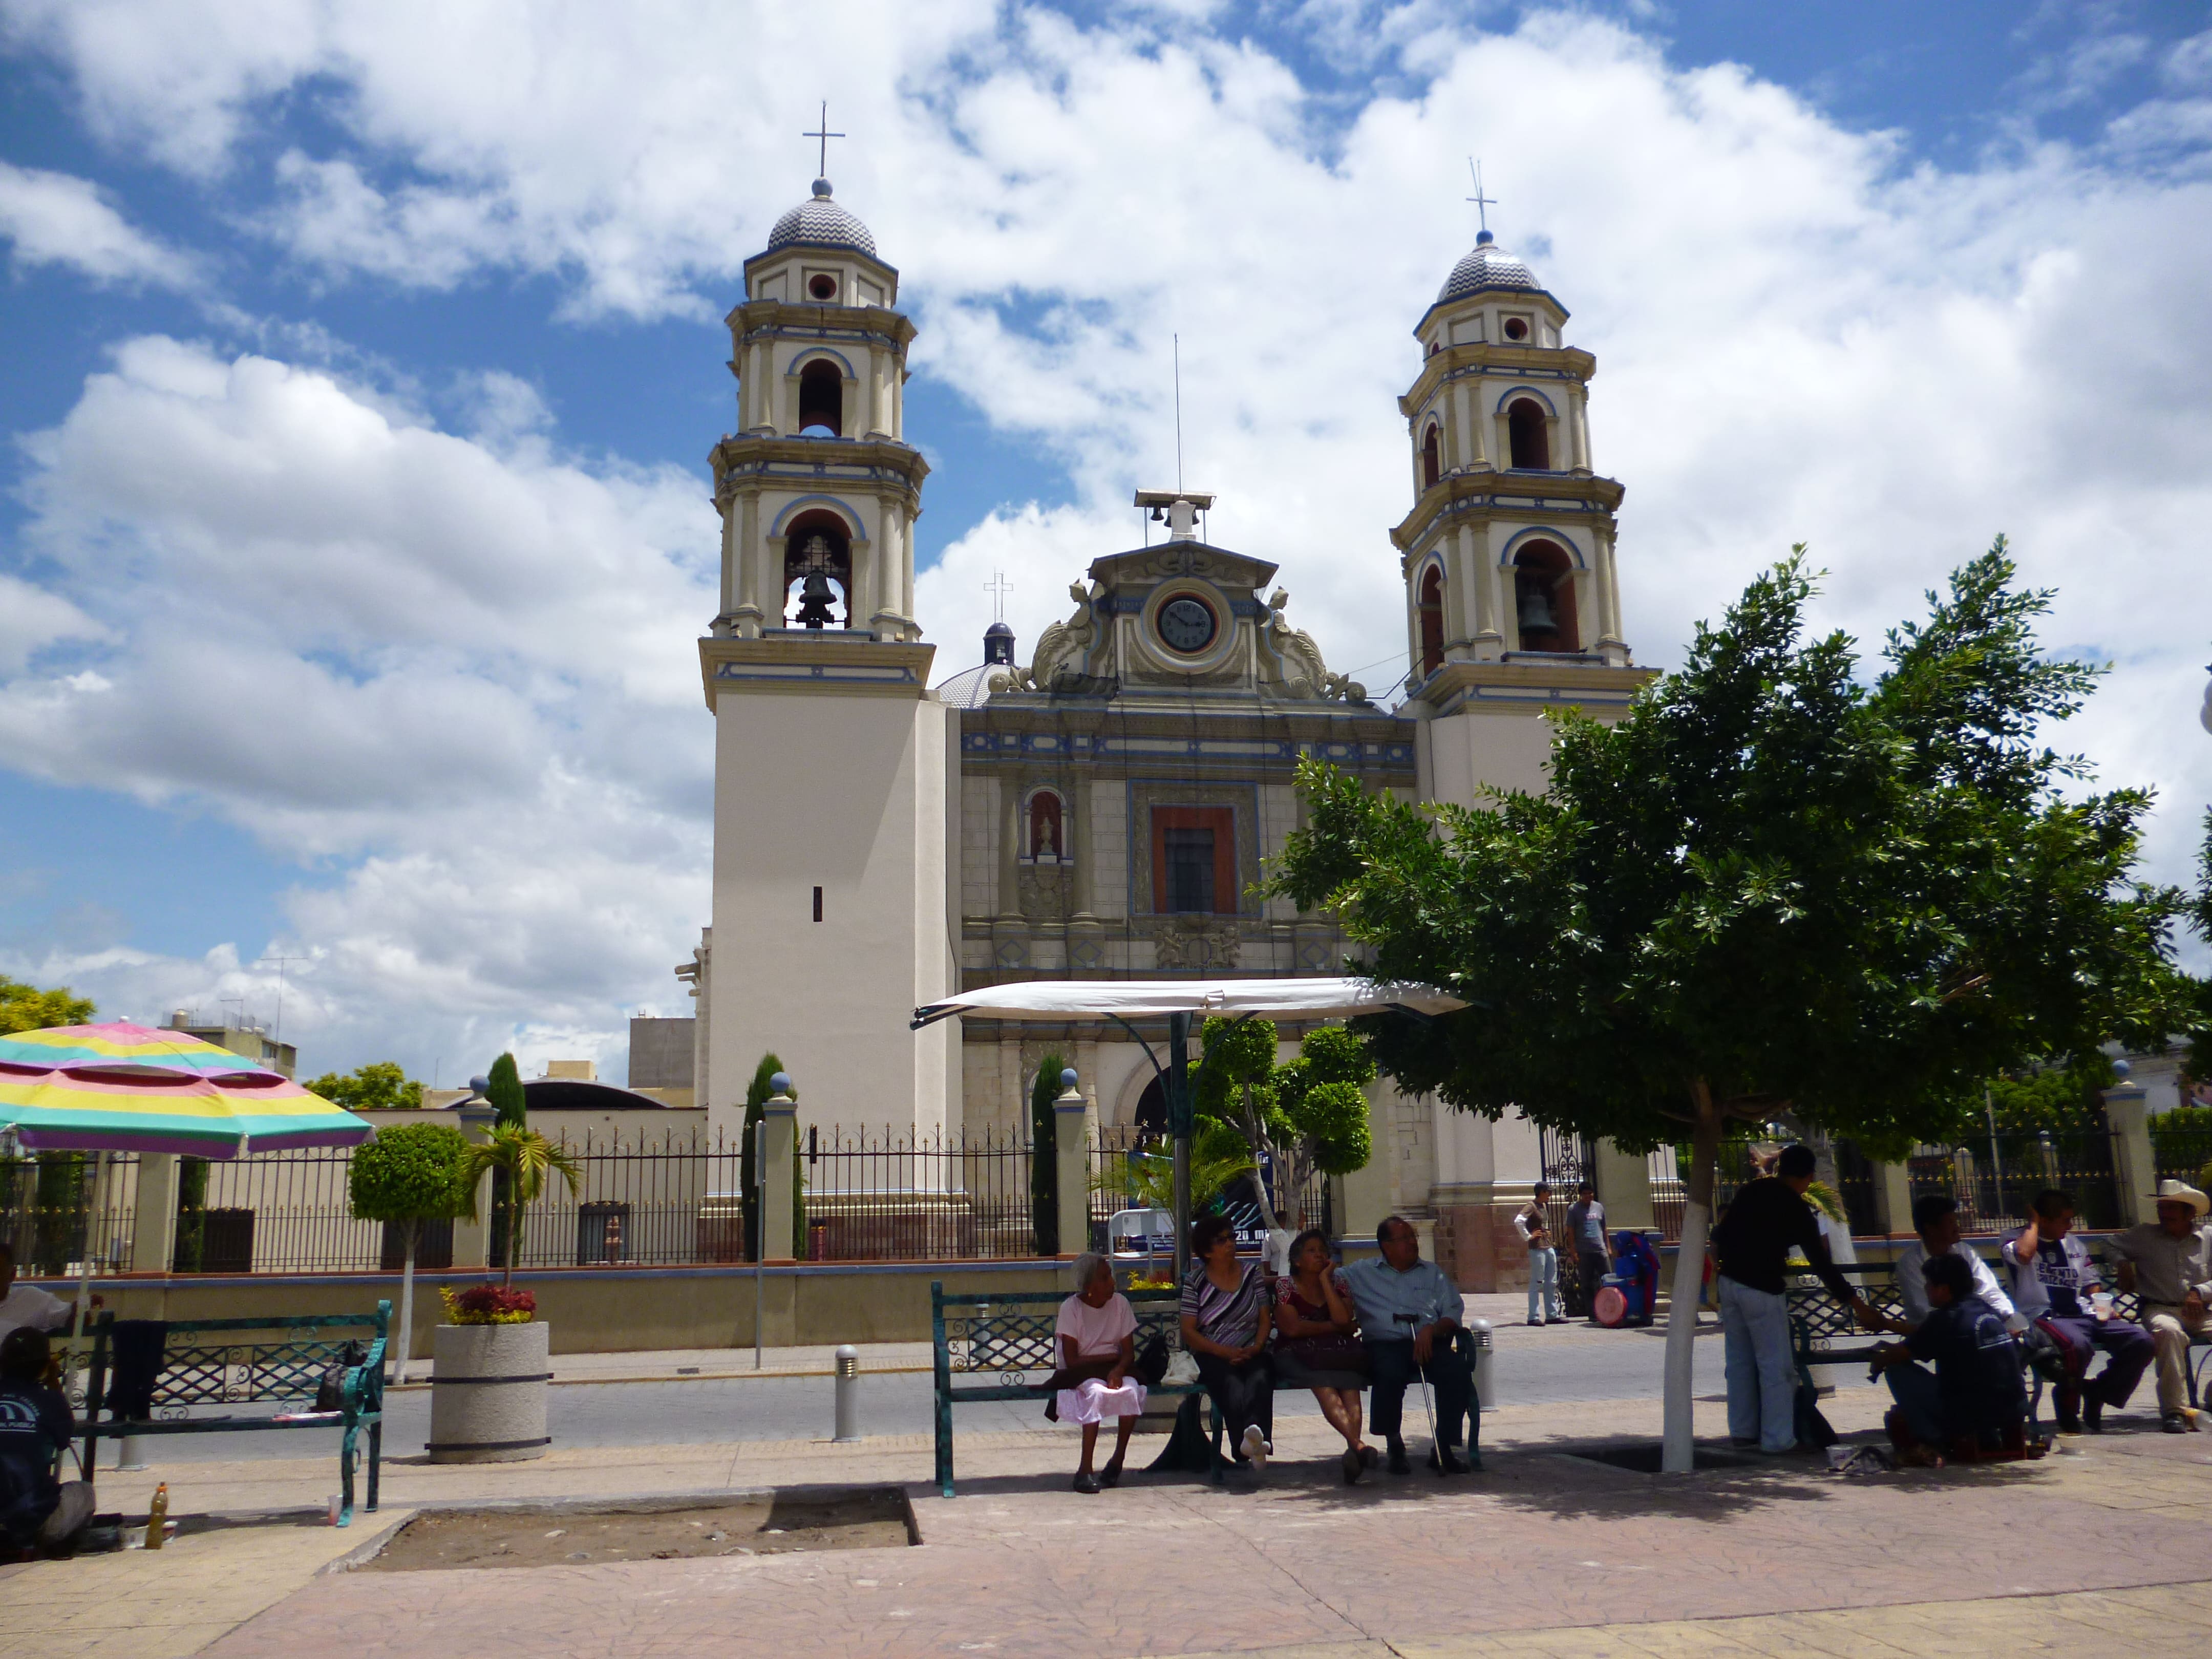 Vista frontal de la Catedral de Tehuacán, Puebla, con personas sentadas al frente